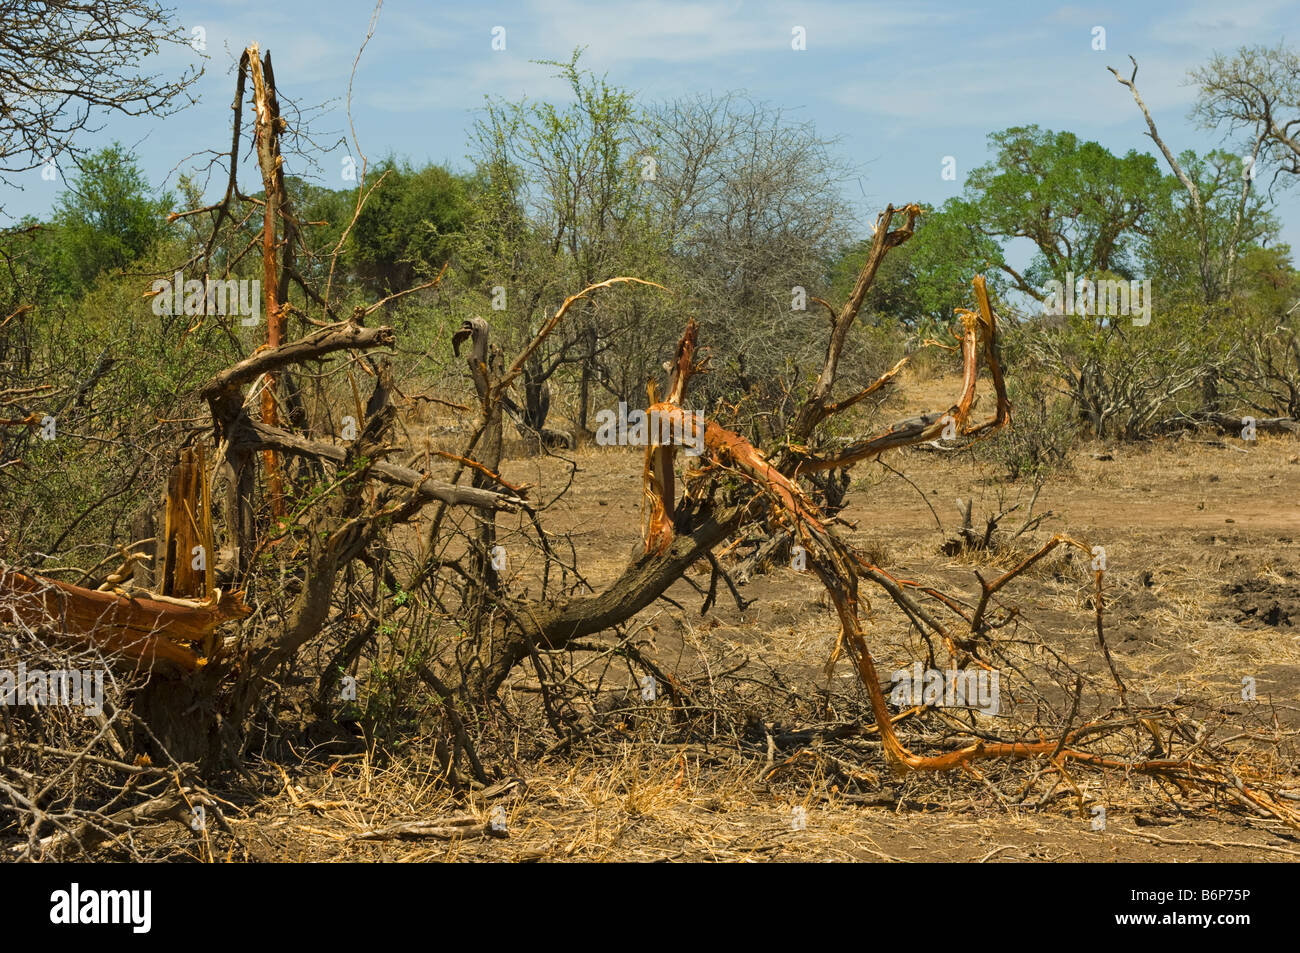 Elefant s travaux arbre buisson détruit détruire un animal sauvage wild Elefant elephant Loxodonta africana au sud-Afrika afrique du sud manger tr Banque D'Images